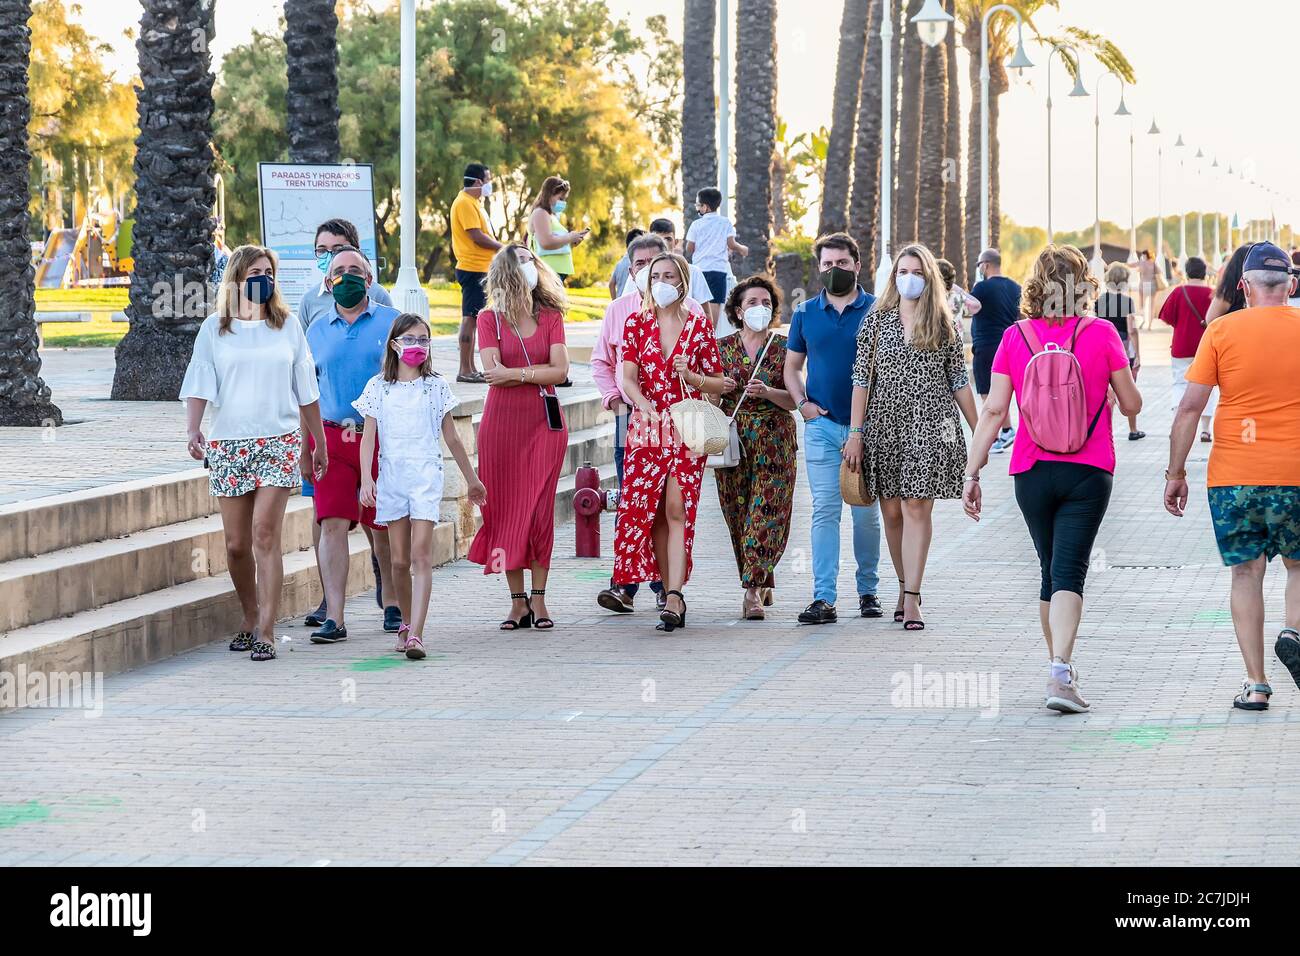 Huelva, Spanien - 3. Juni 2020: Menschen, die bei Sonnenuntergang an der Islantilla Promenade entlang gehen, tragen eine Schutzmaske wegen Covid-19. Stockfoto